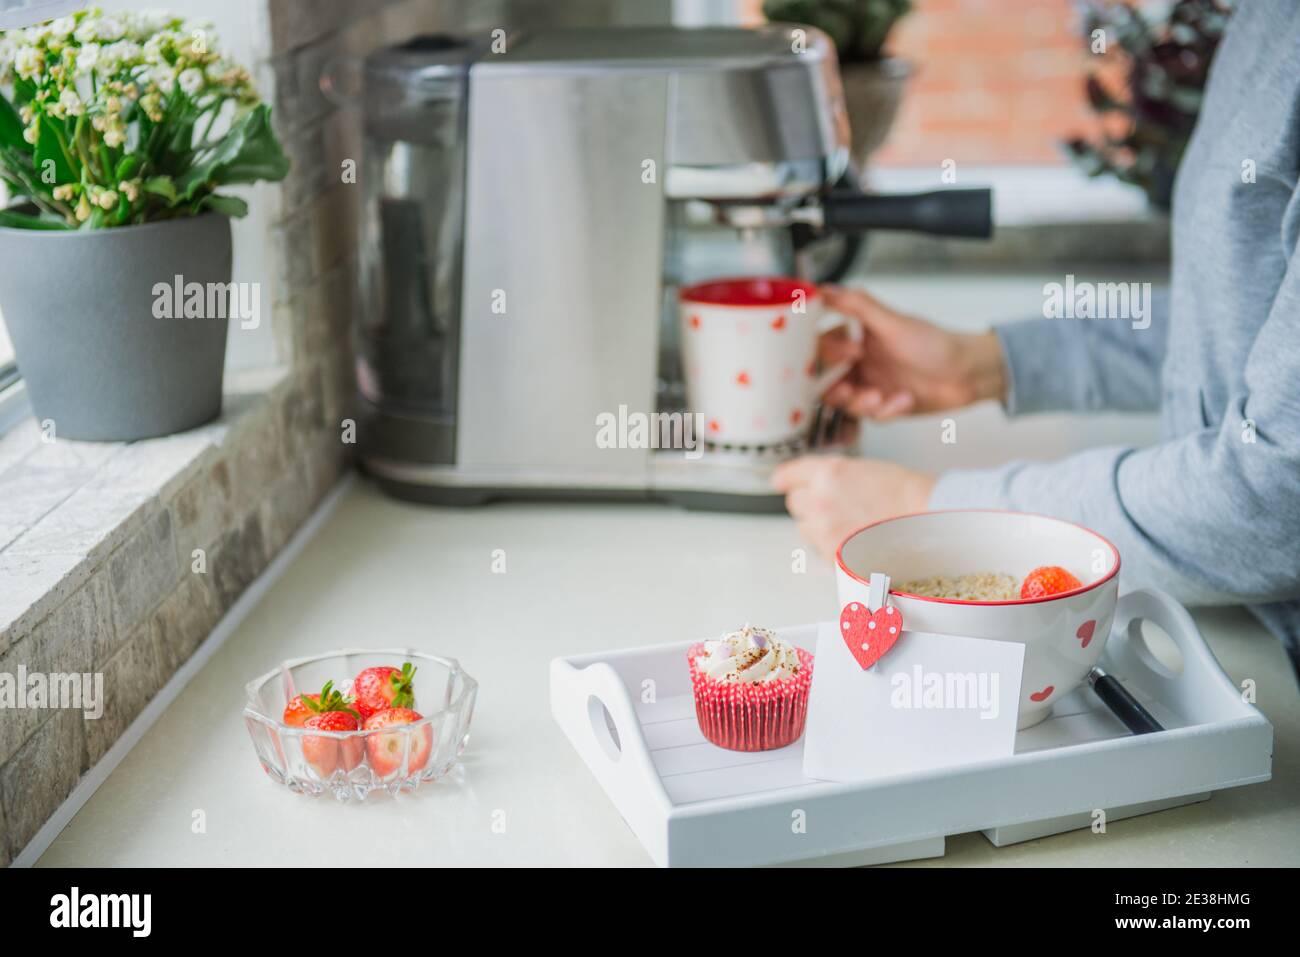 Un plateau avec porridge de flocons d'avoine avec des fraises, un cupcake, et une carte de vœux vierge avec le fond d'une femme faisant du café sur la machine pendant la préparation Banque D'Images